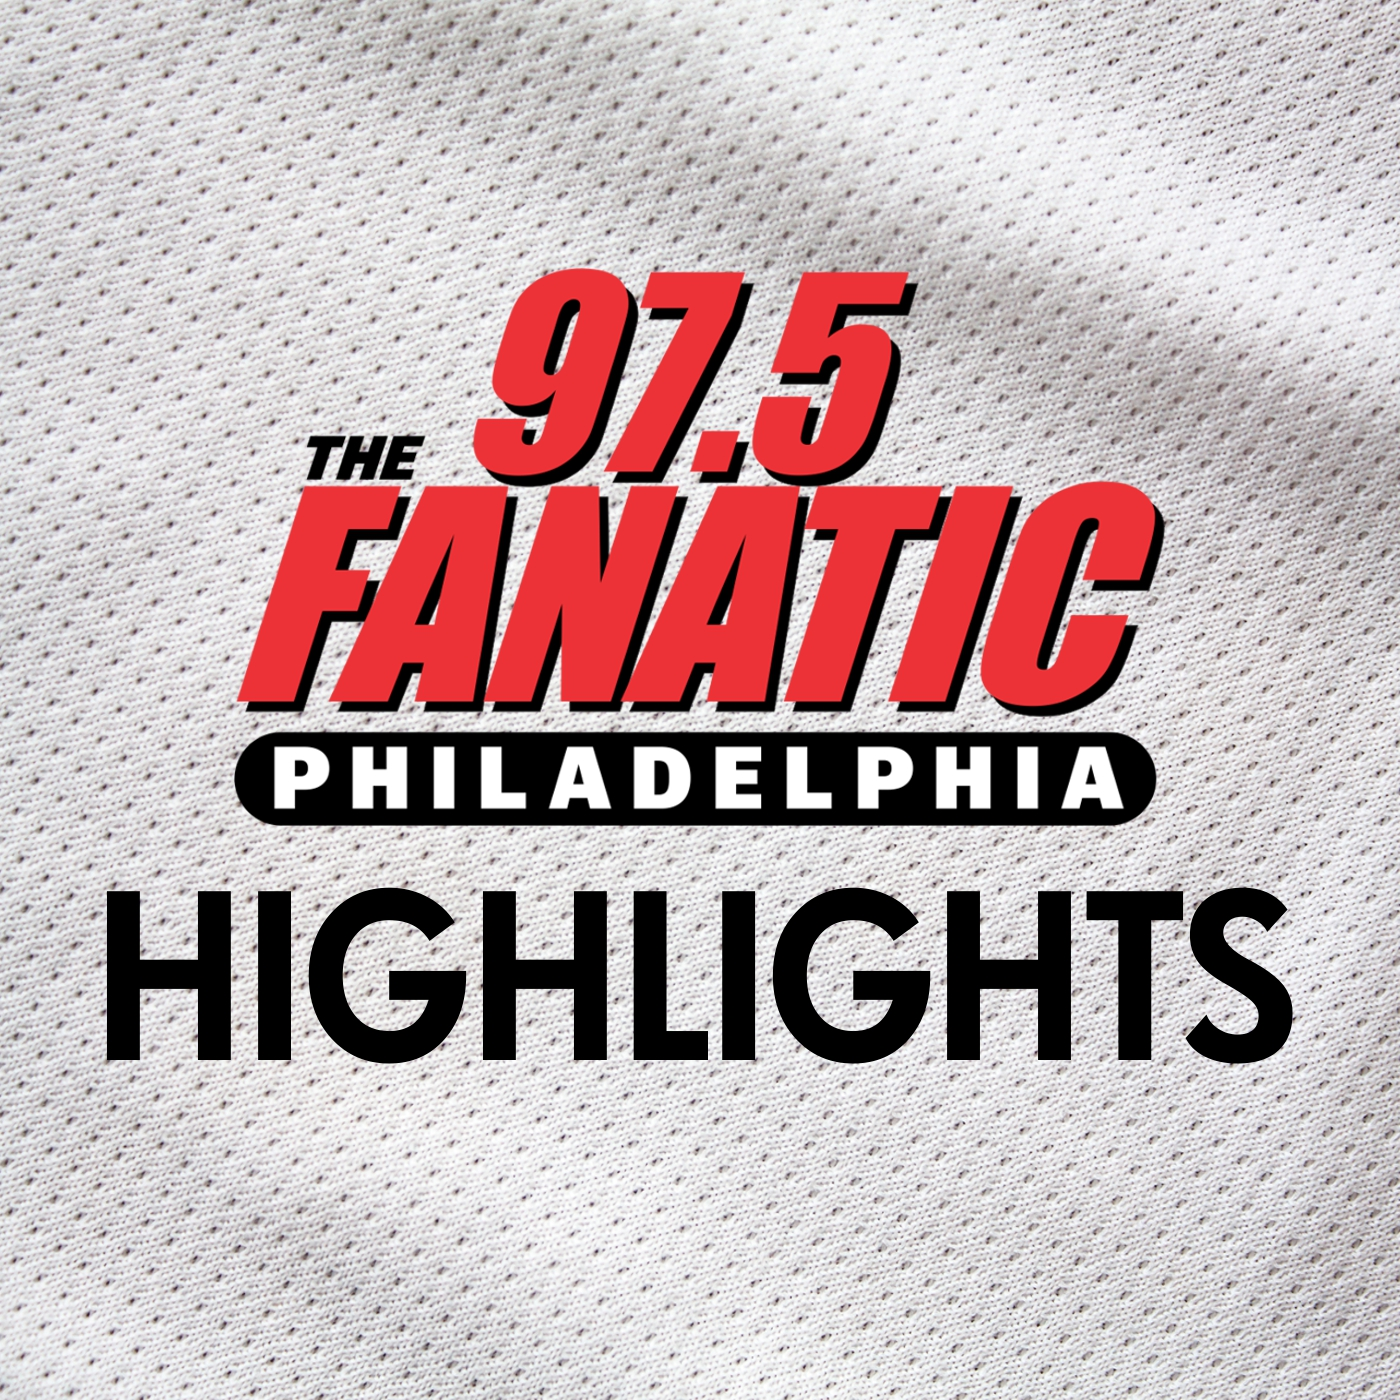 Fanatic Weekend | Amy Fadool | Eagles Offense & Phillies Deadline